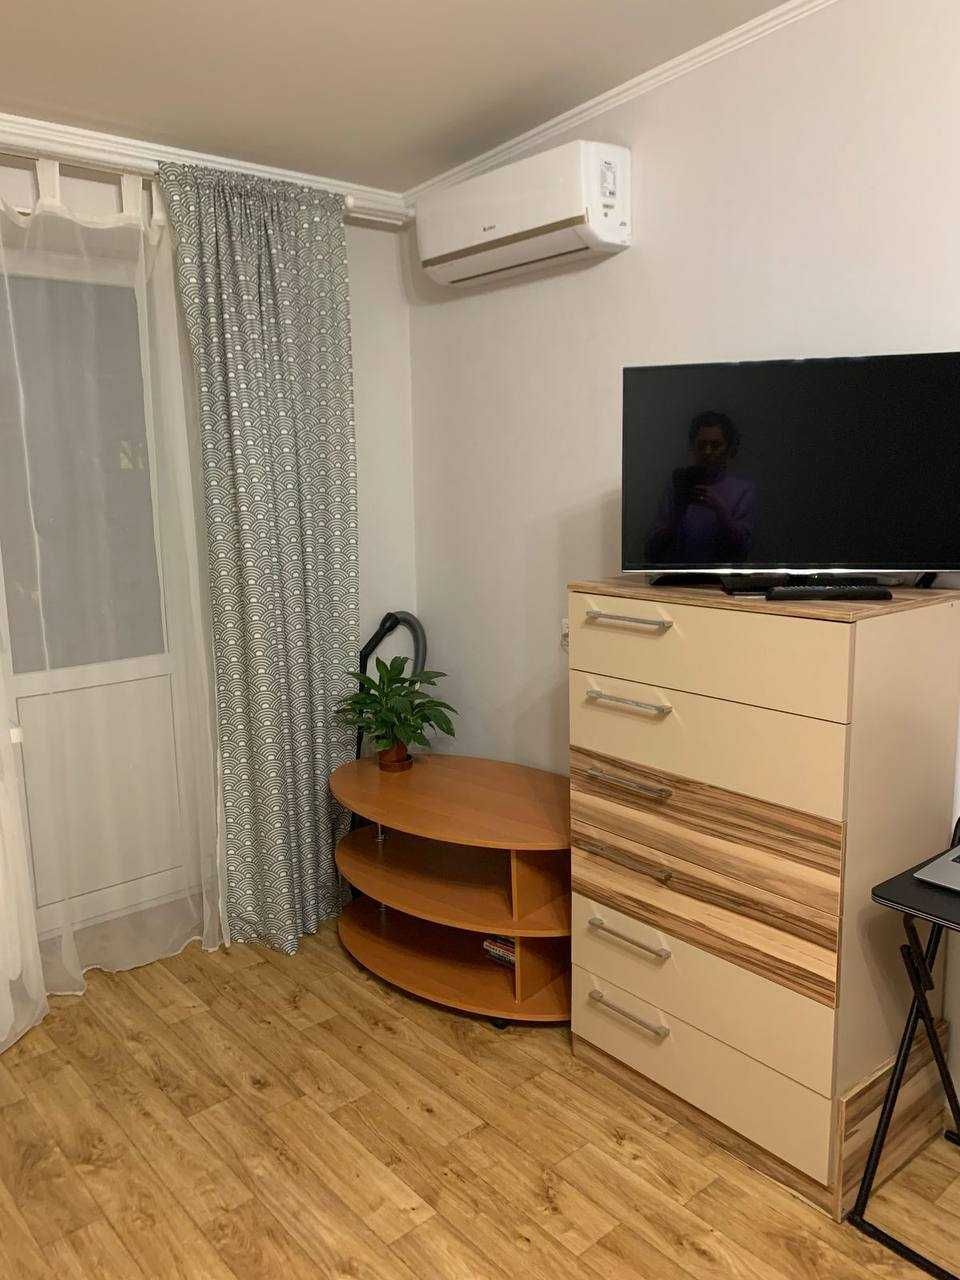 Продам 1 комнатную квартиру на Черемушках по улице Варненская